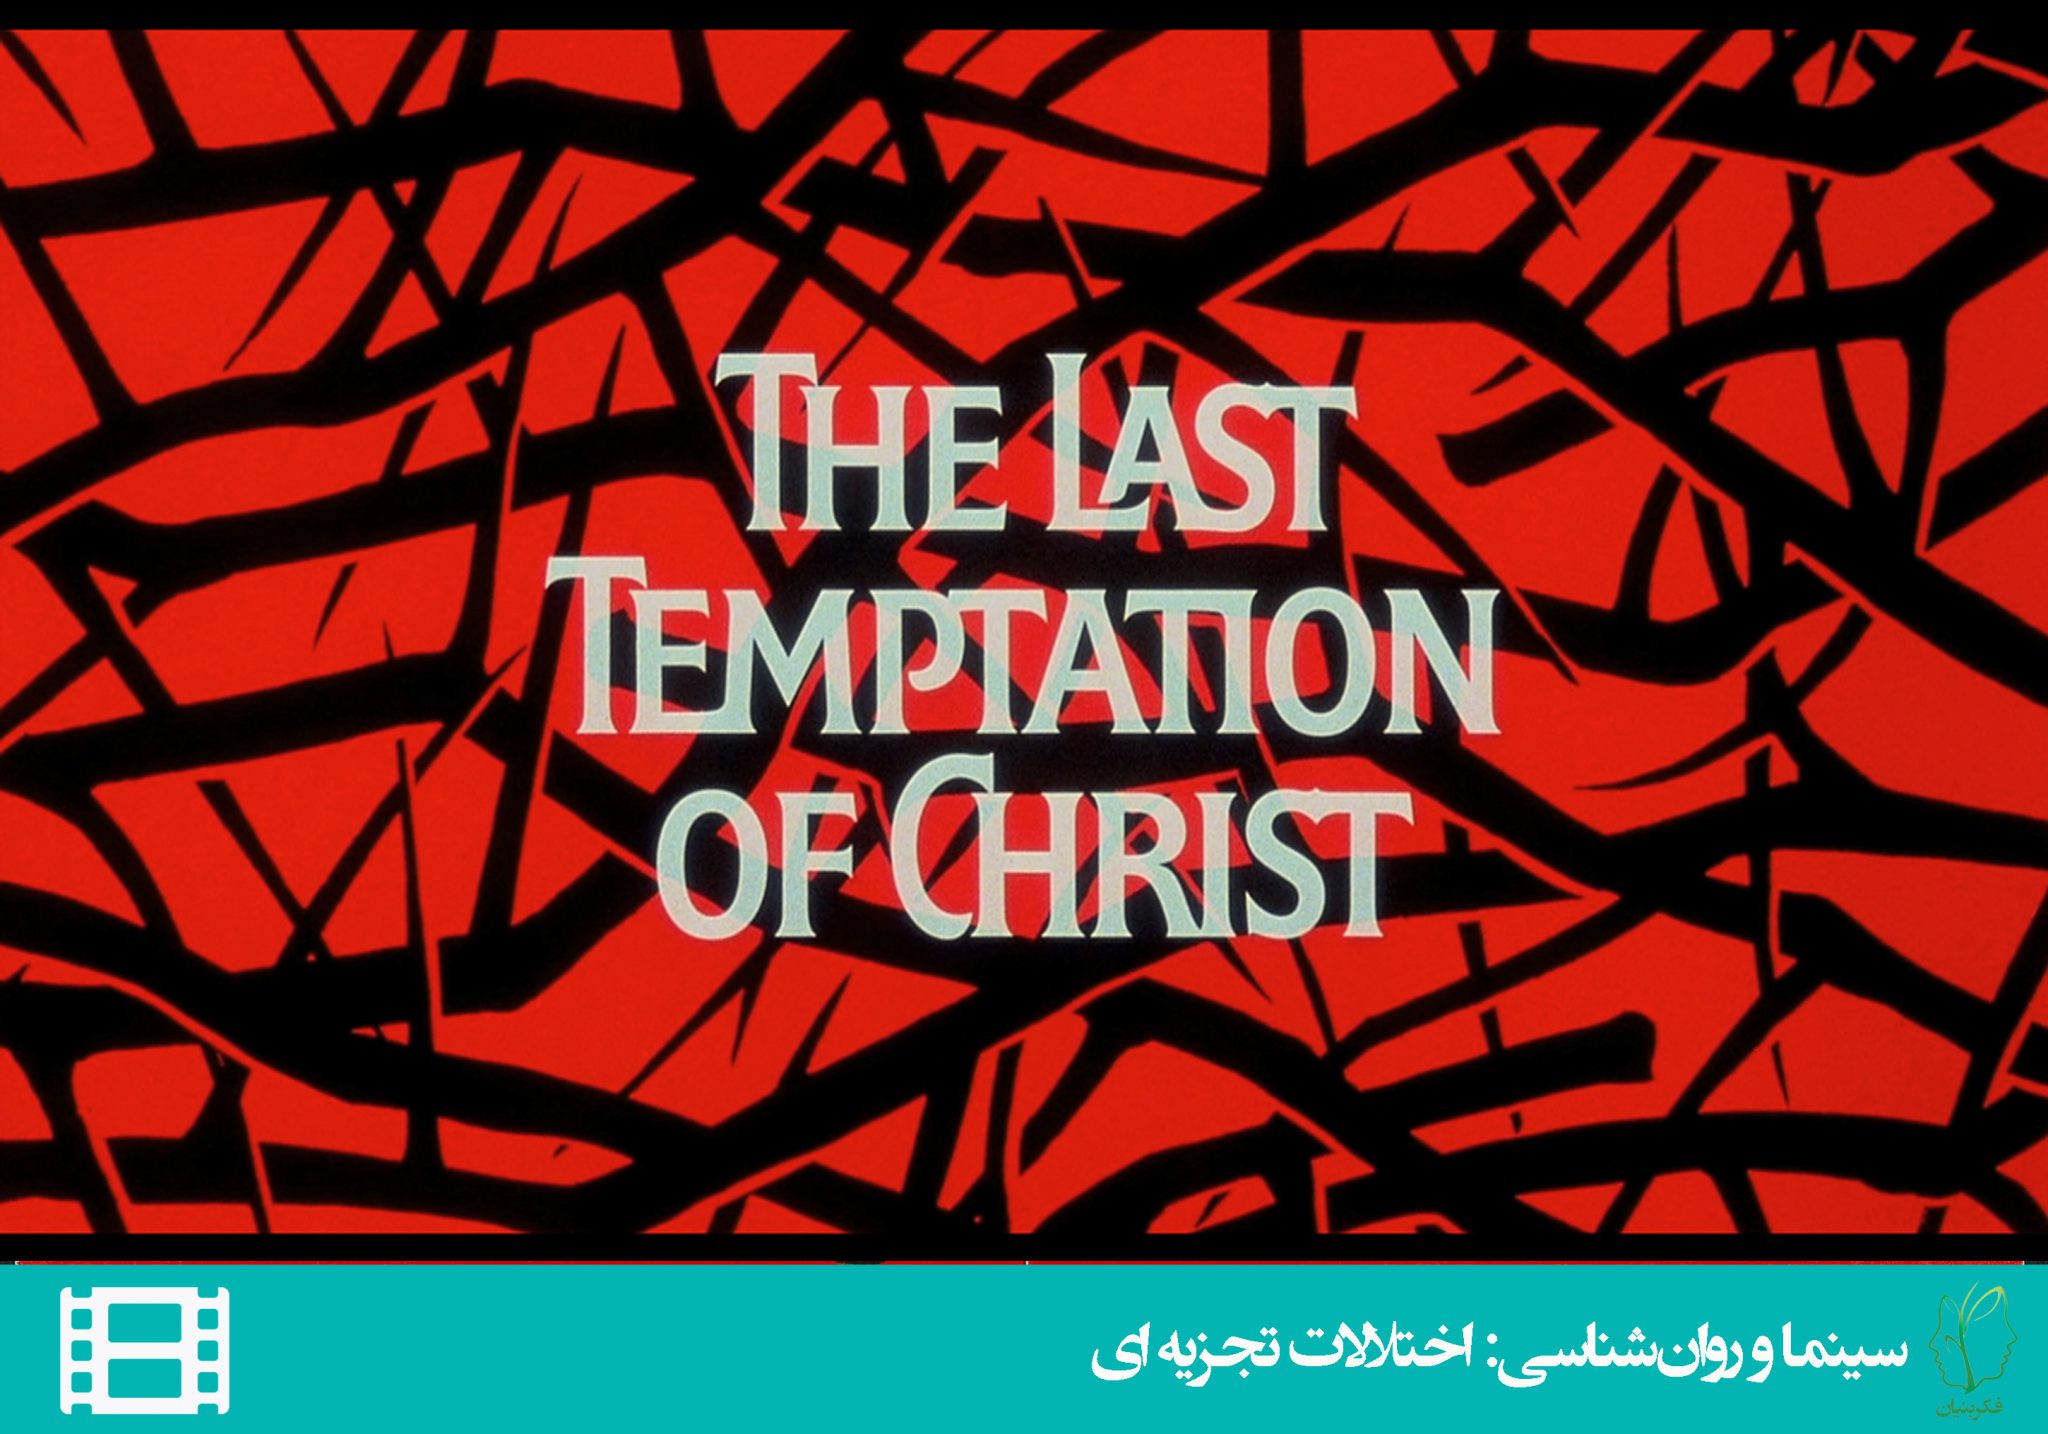 آخرين وسوسه ی مسيح (The Last Temptation of Christ)